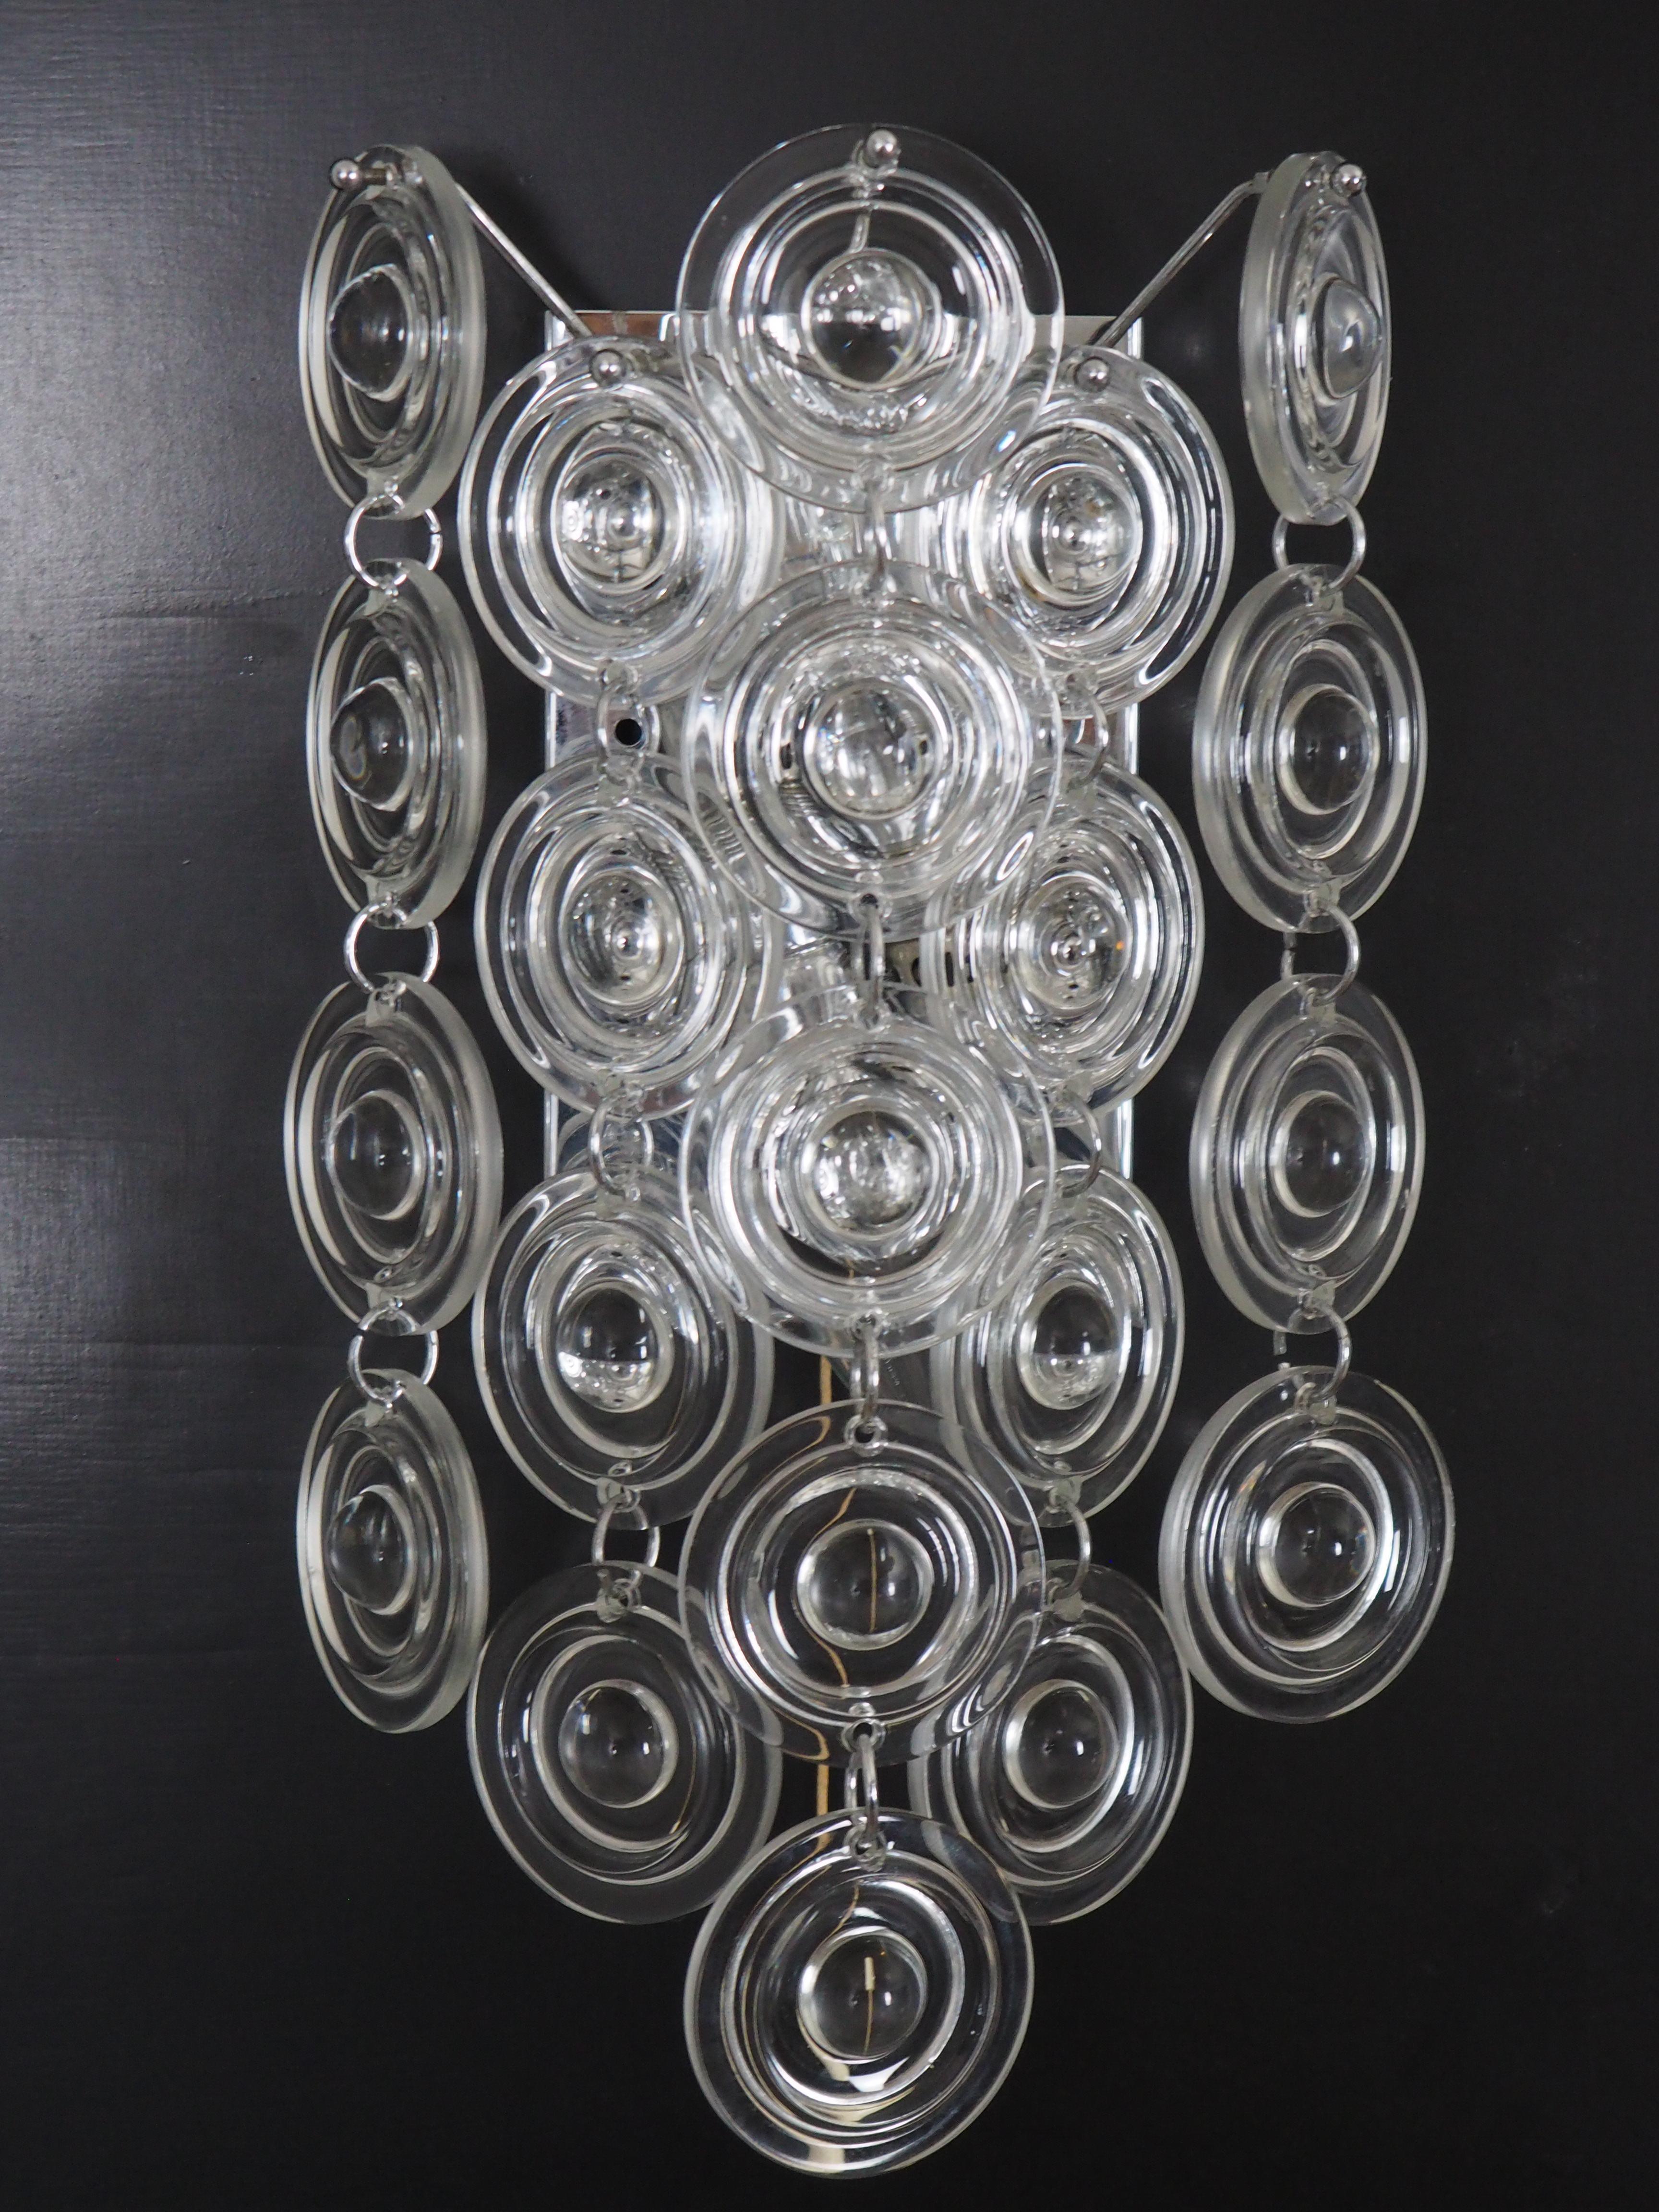 Ein Paar seltene Wandleuchten aus Glas und Nickel von Sciolari, Italien, um 1970er Jahre.
Diese hochwertigen Stücke bestehen aus vielen klaren Muranoglasscheiben, die an einem vernickelten Messingrahmen hängen.

Die Abmessungen der Wandleuchten